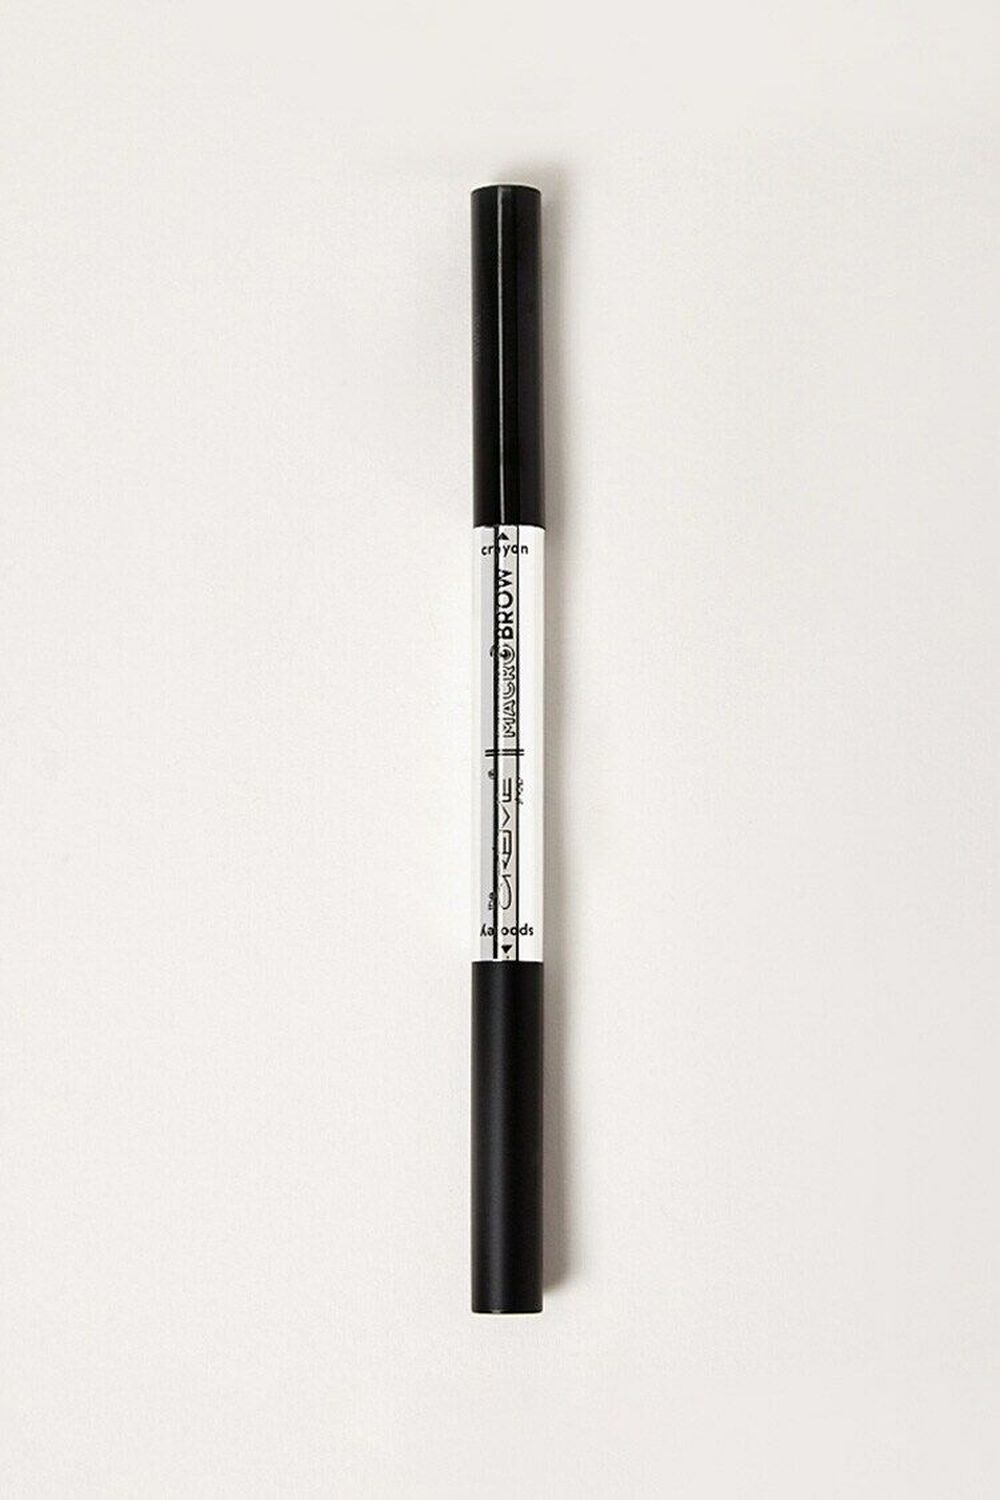 EBONY The Crème Shop Macro Brow Pencil, image 2